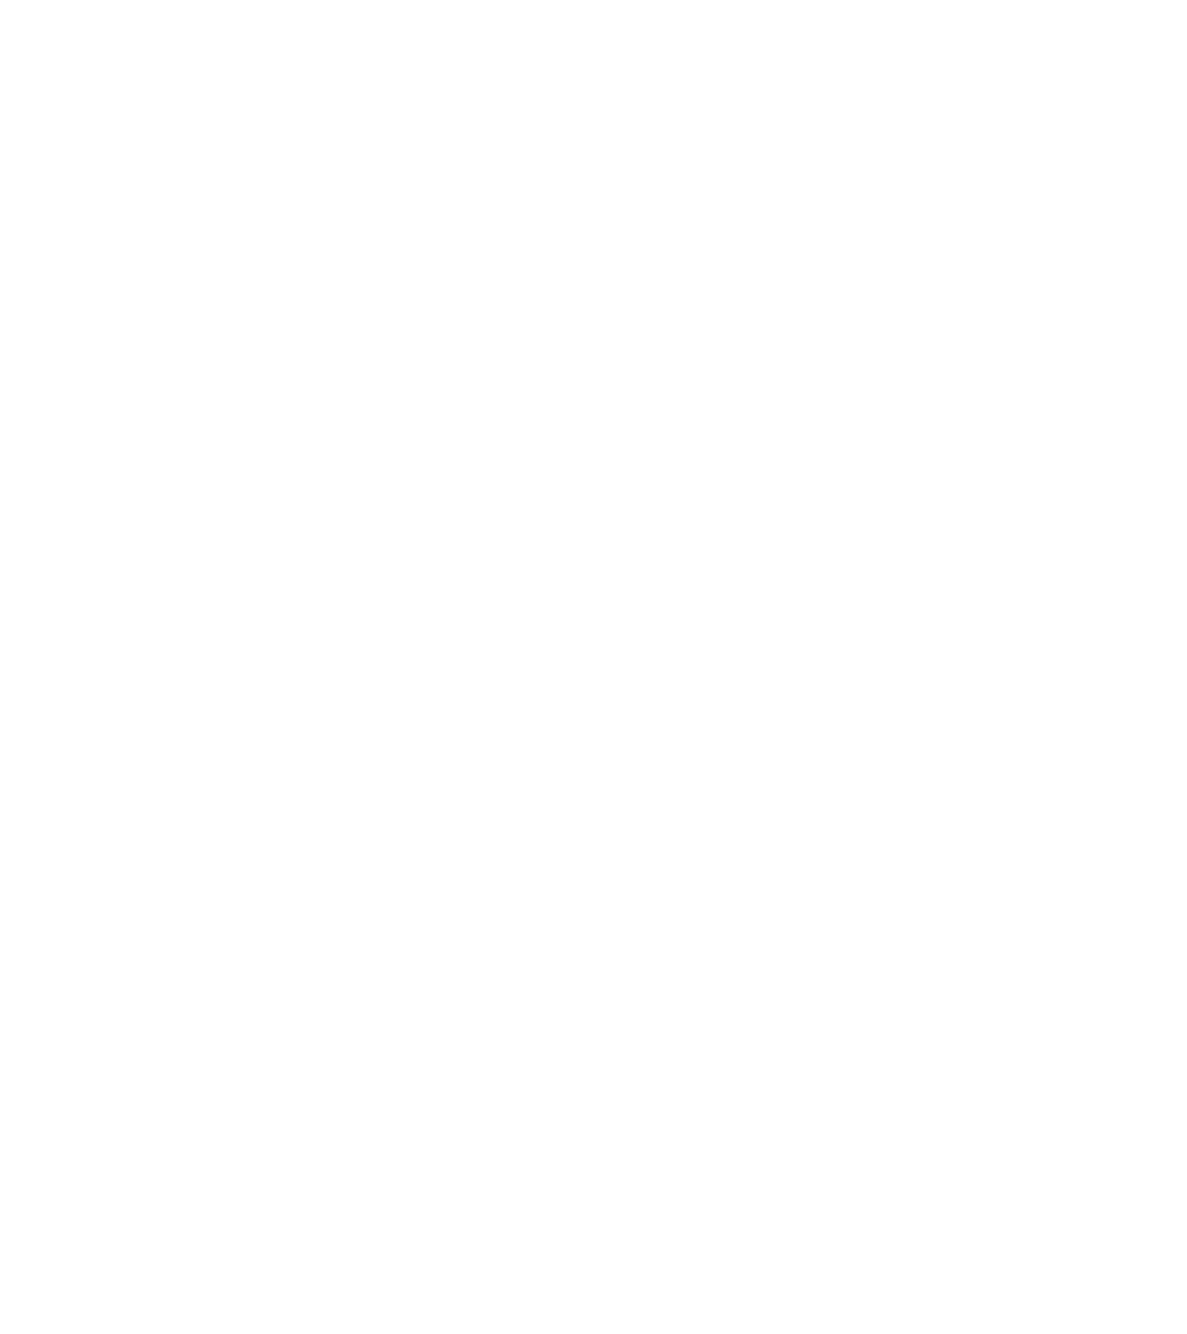 Лот №12: Картина «Зимние ели». Оргалит, масло, размер 30х35 см (с рамой 40х54 см), 2000 г. (автор: Сляднев А.). Начальная цена: 10 000 руб.